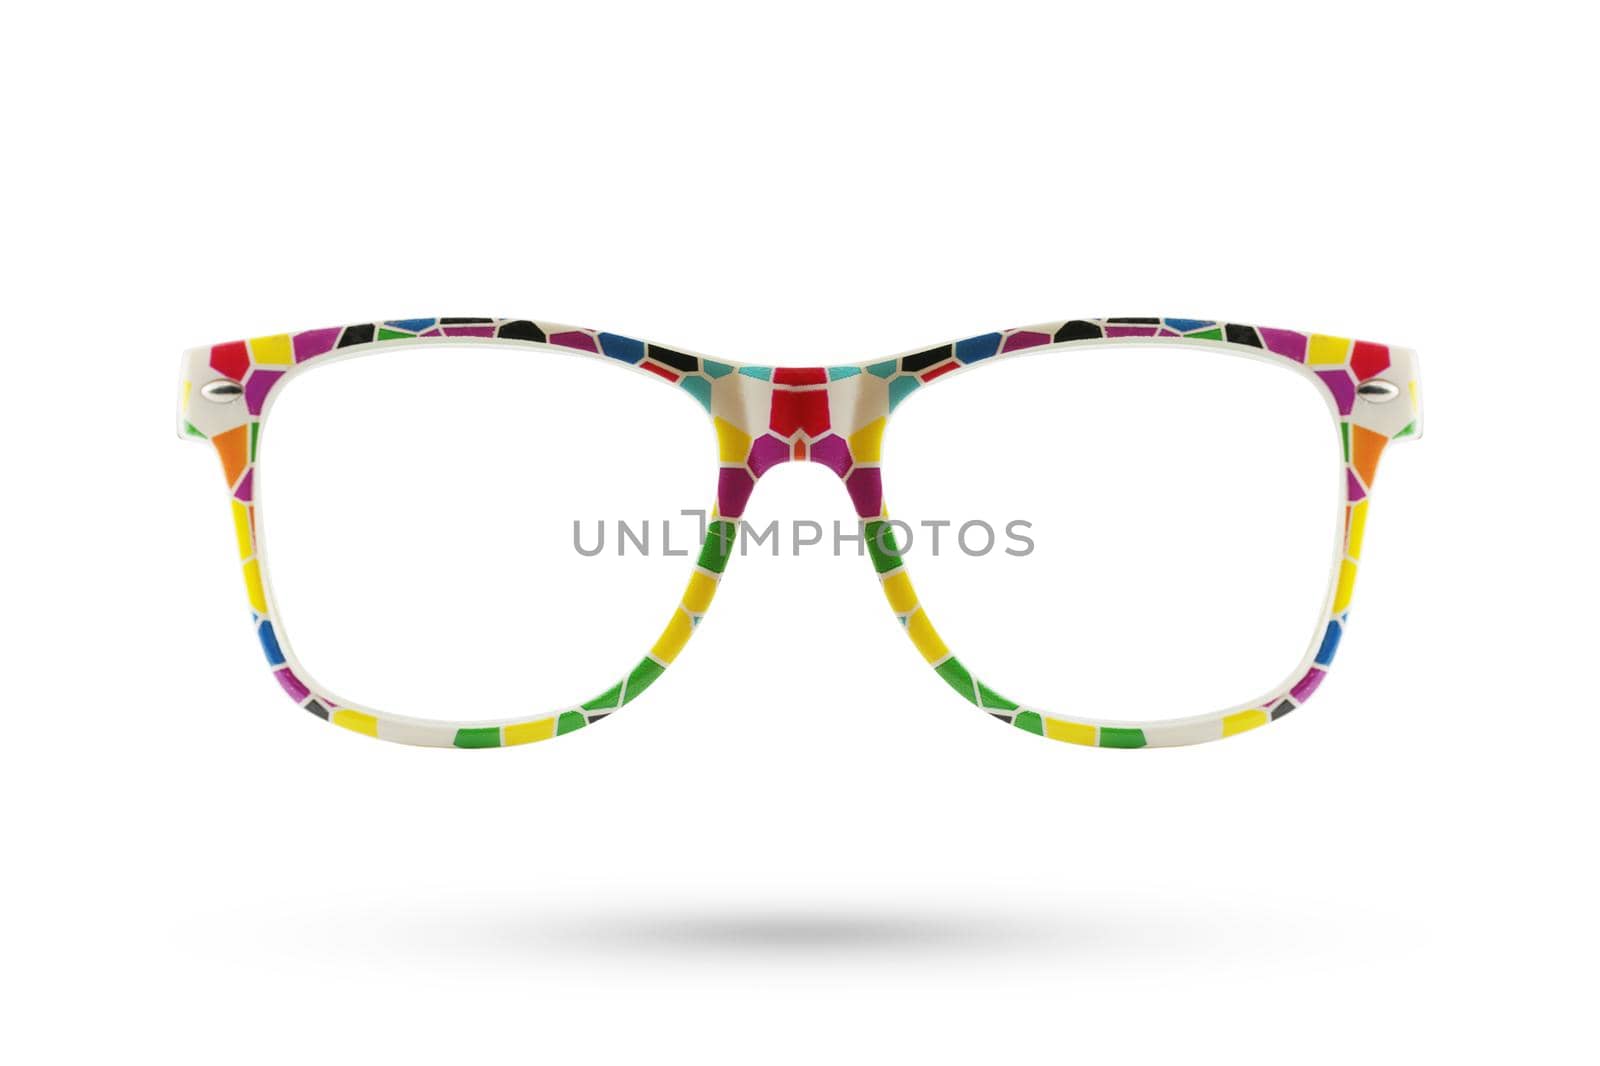 Fashion rainbow glasses style plastic-framed isolated on white background.